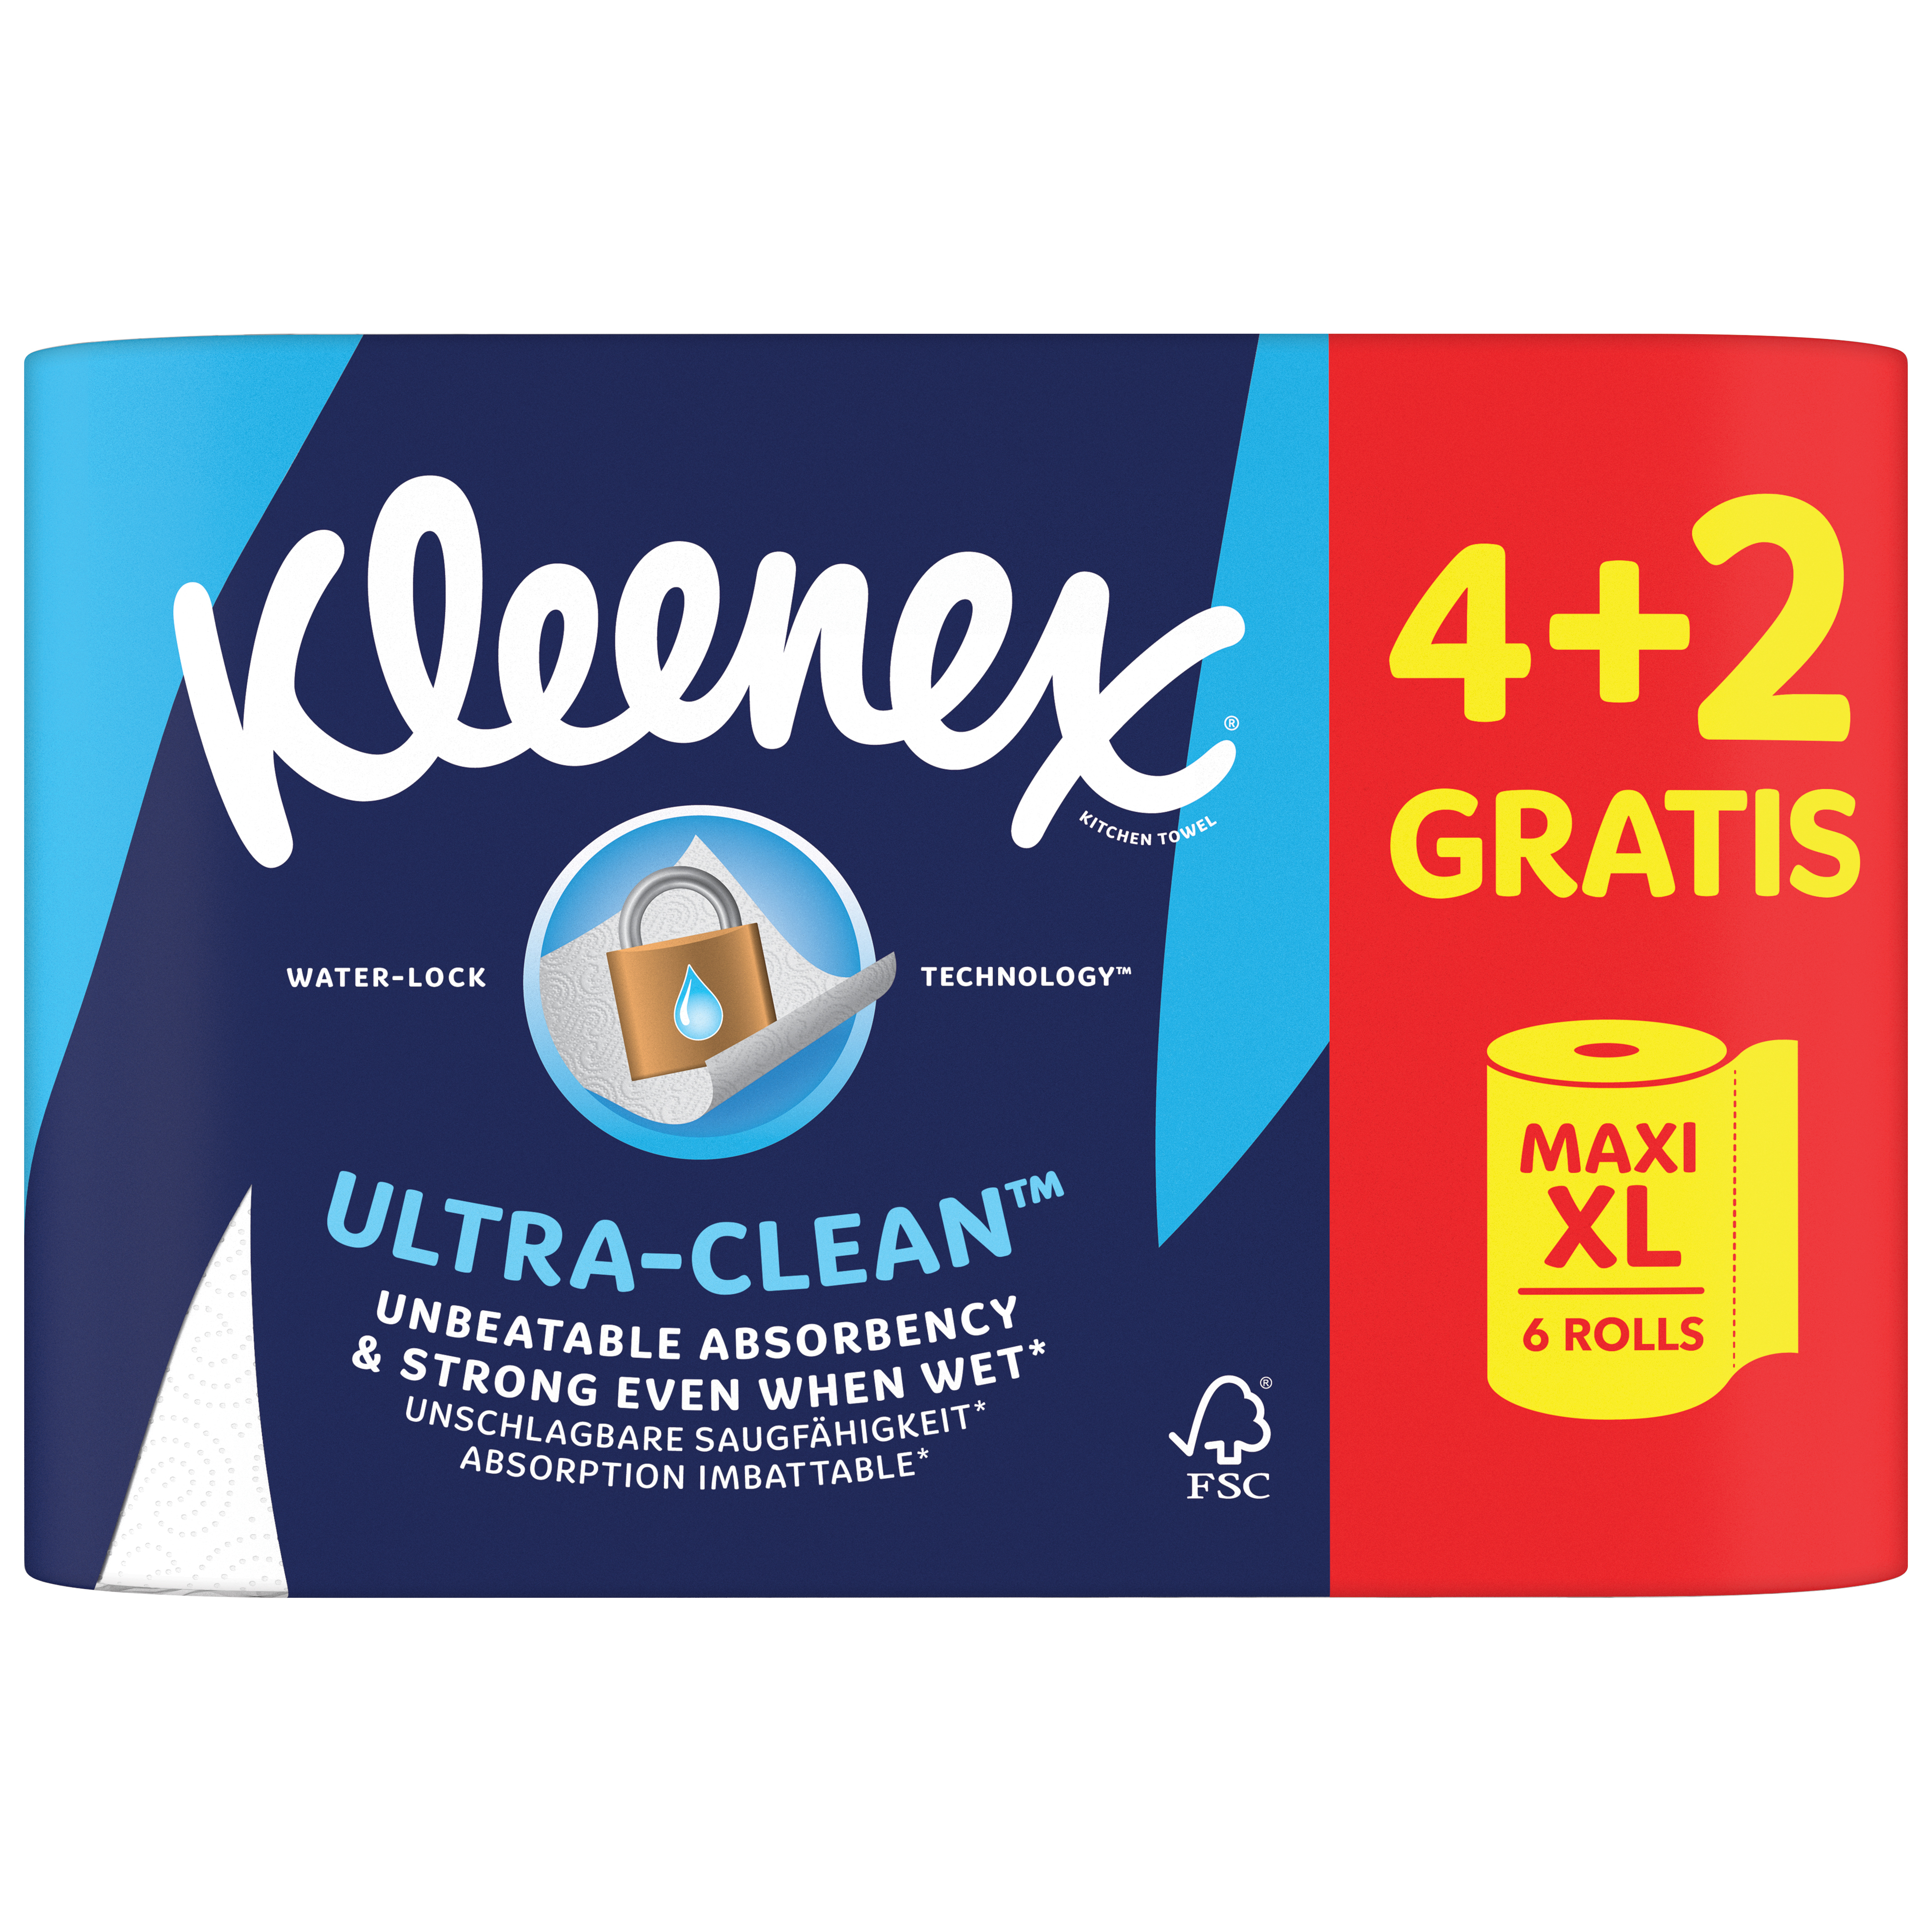 Essuie-tout pour cuisine Kleenex Premier (13964), doux comme du tissu,  perforés, 24 rouleaux/caisse, 70 essuie-tout Kleenex/rouleau